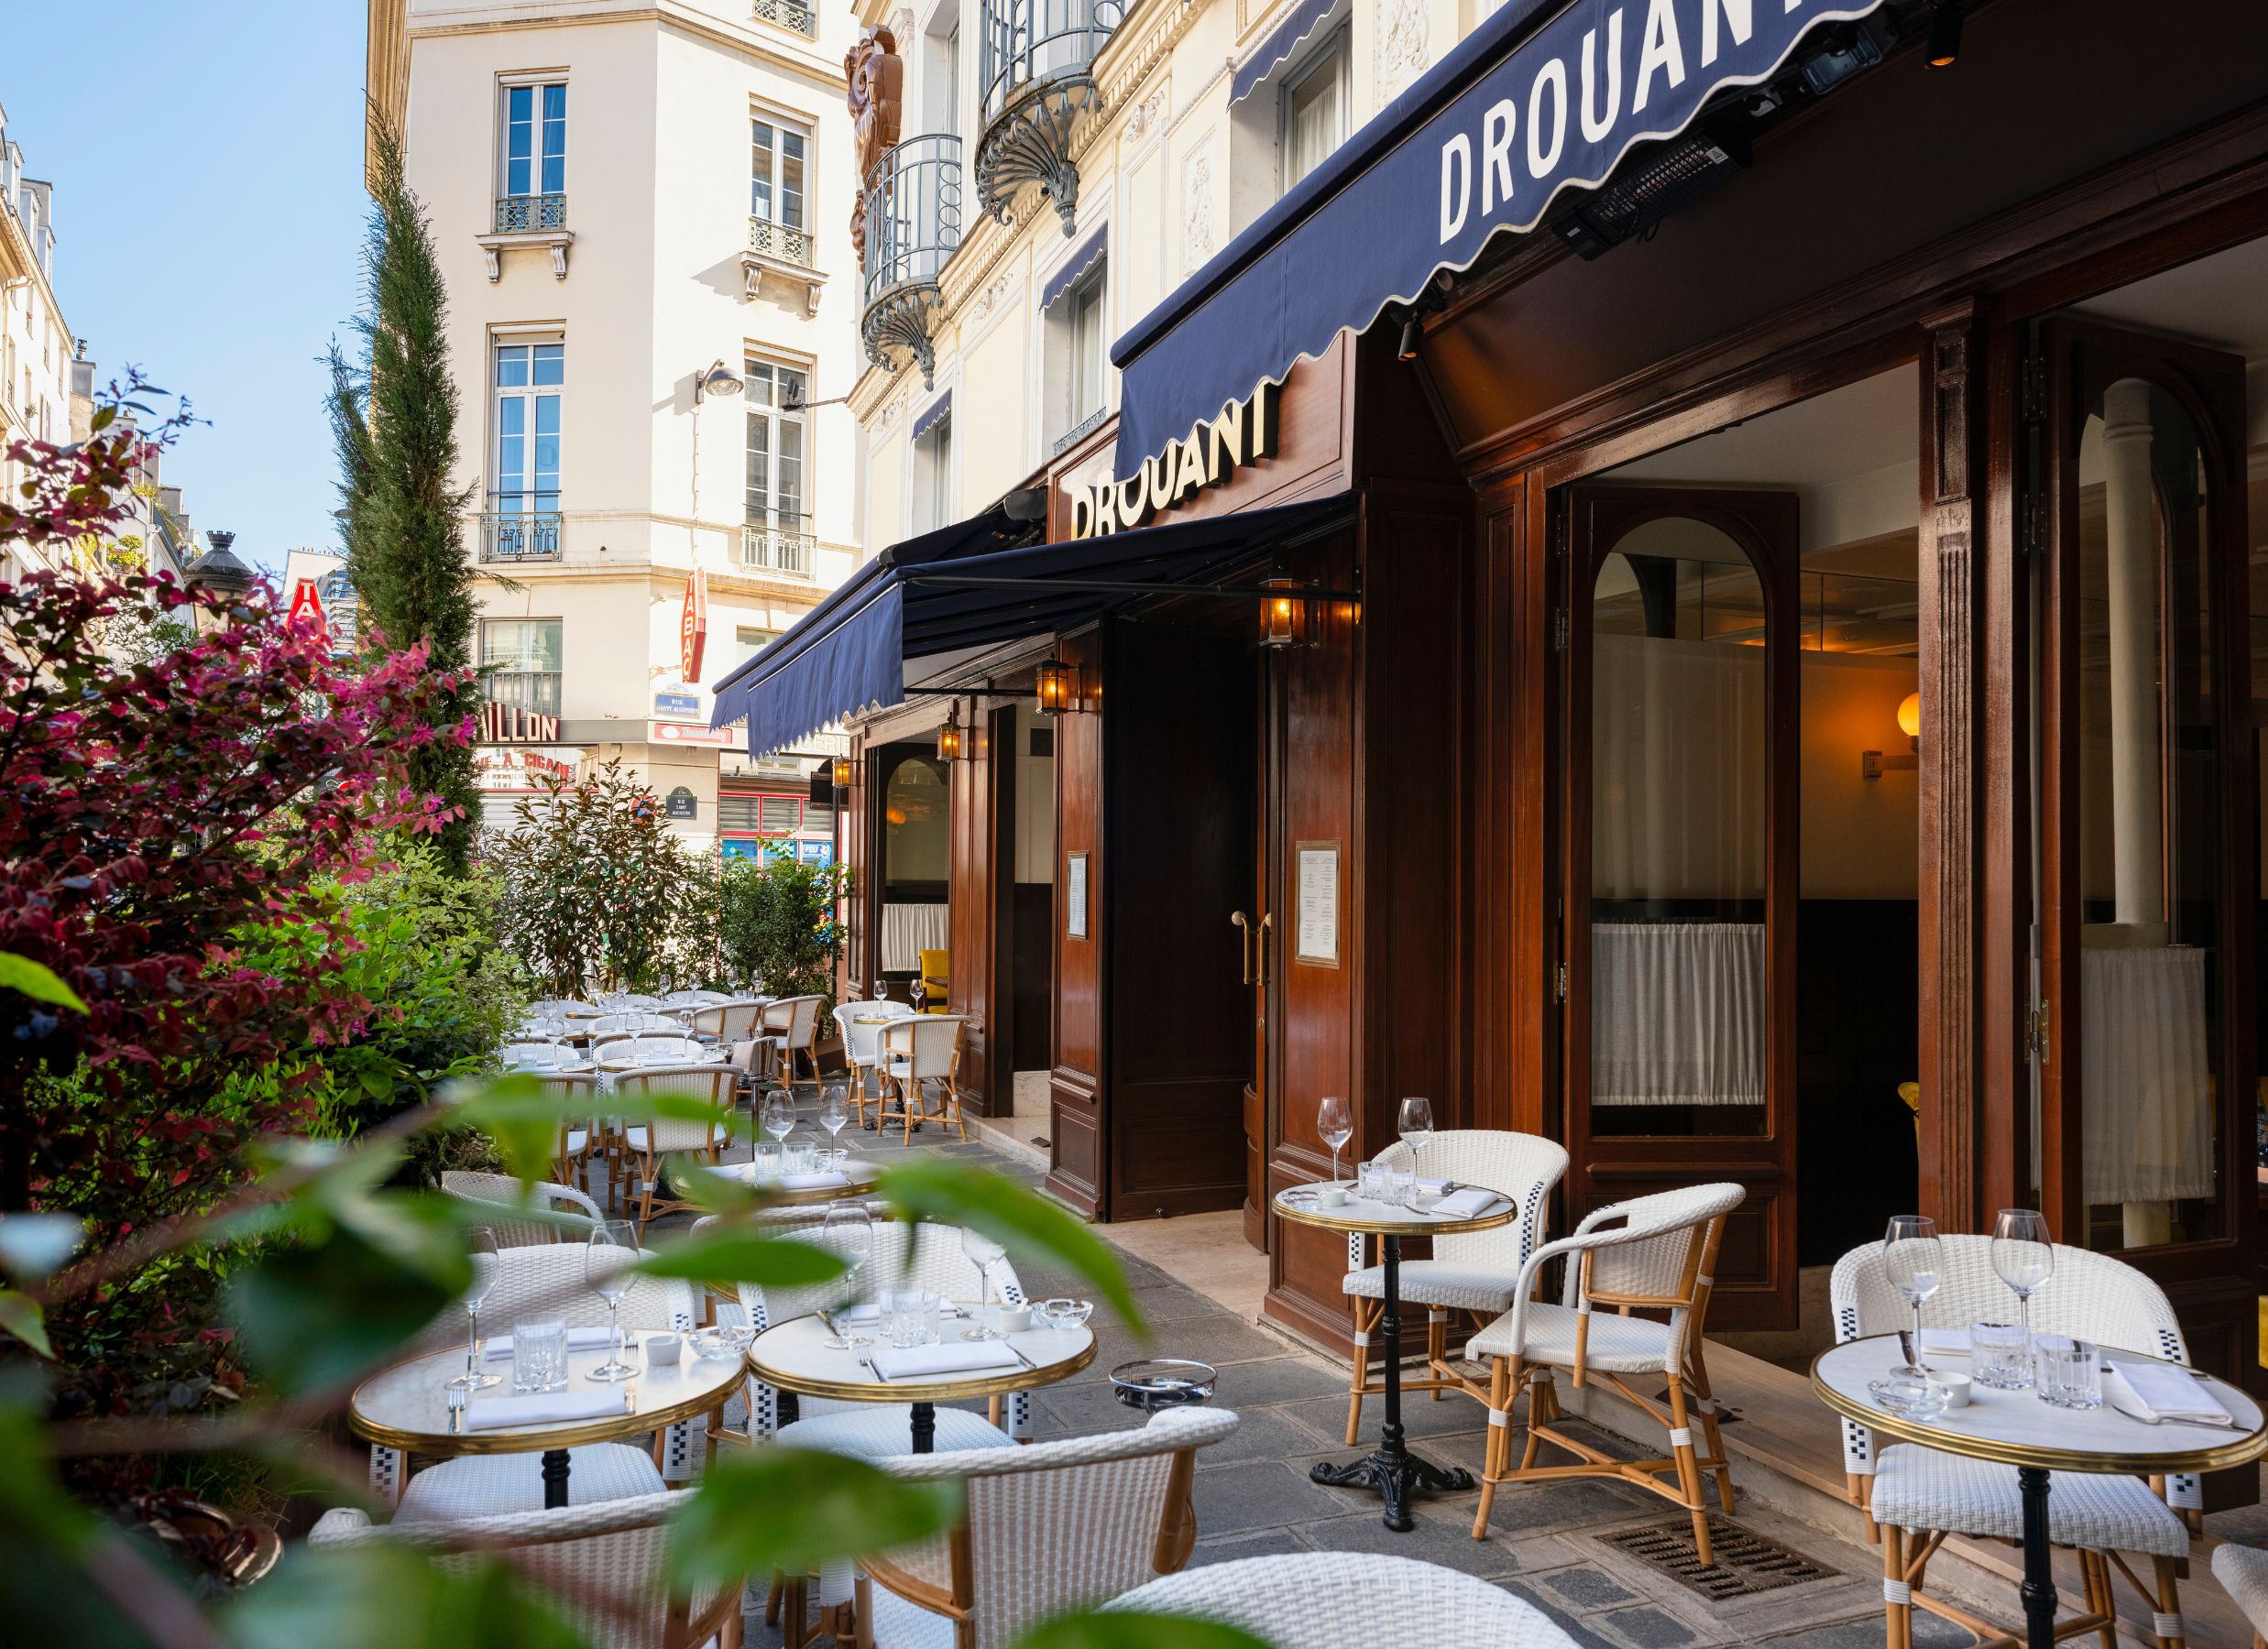 Drouant Restaurant Paris | OFFICIAL SITE | Historic Restaurant Paris Opera